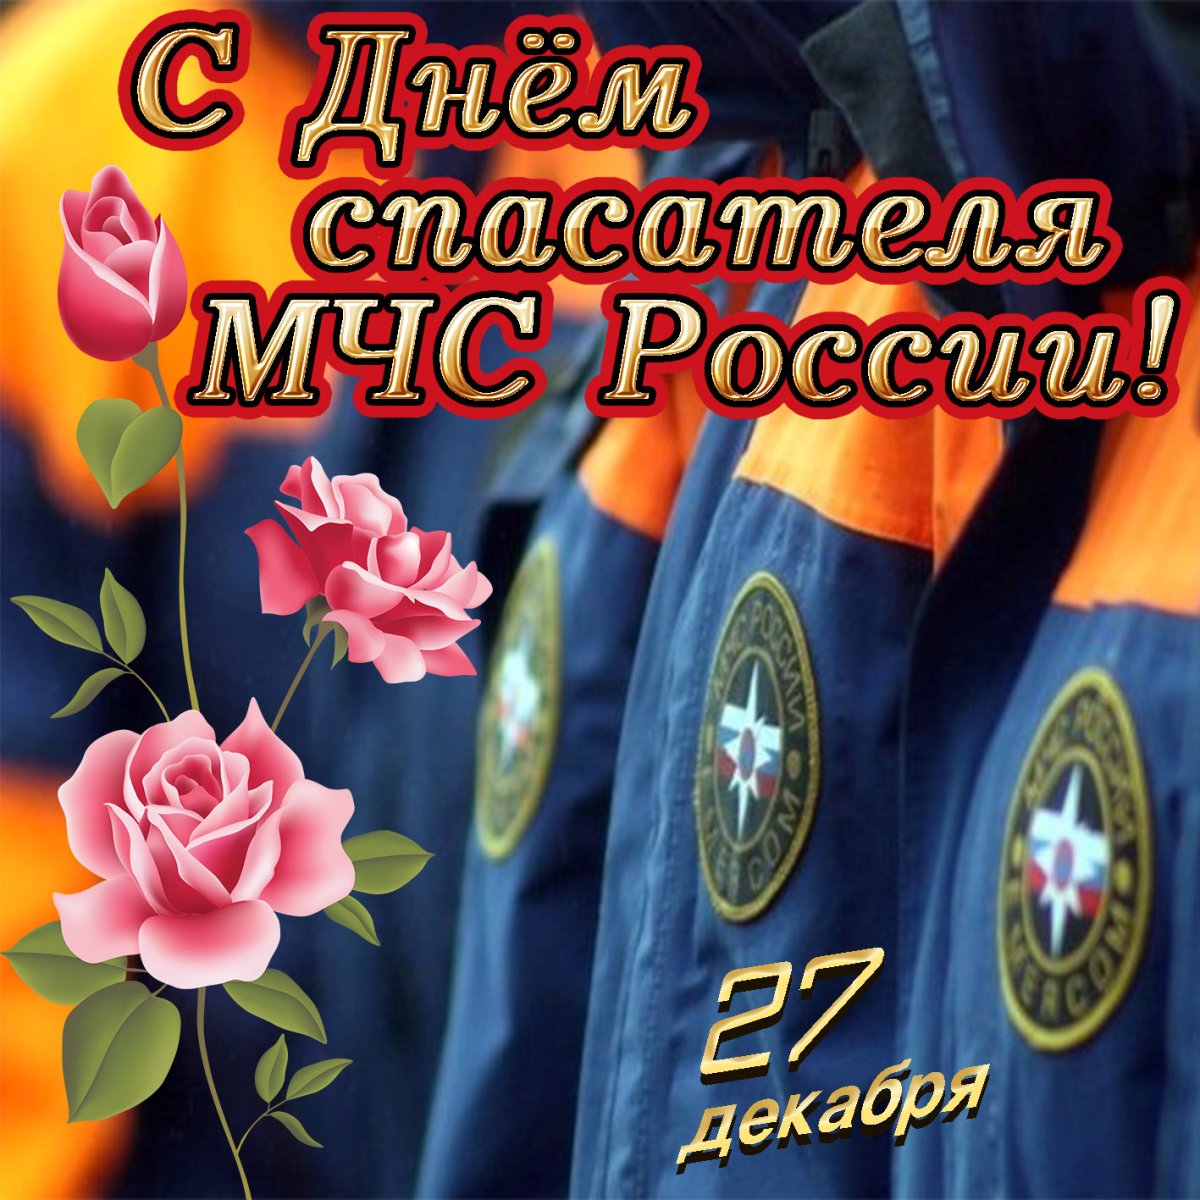 Как трогательного поздравить с Днем спасателя России в году - Толк 